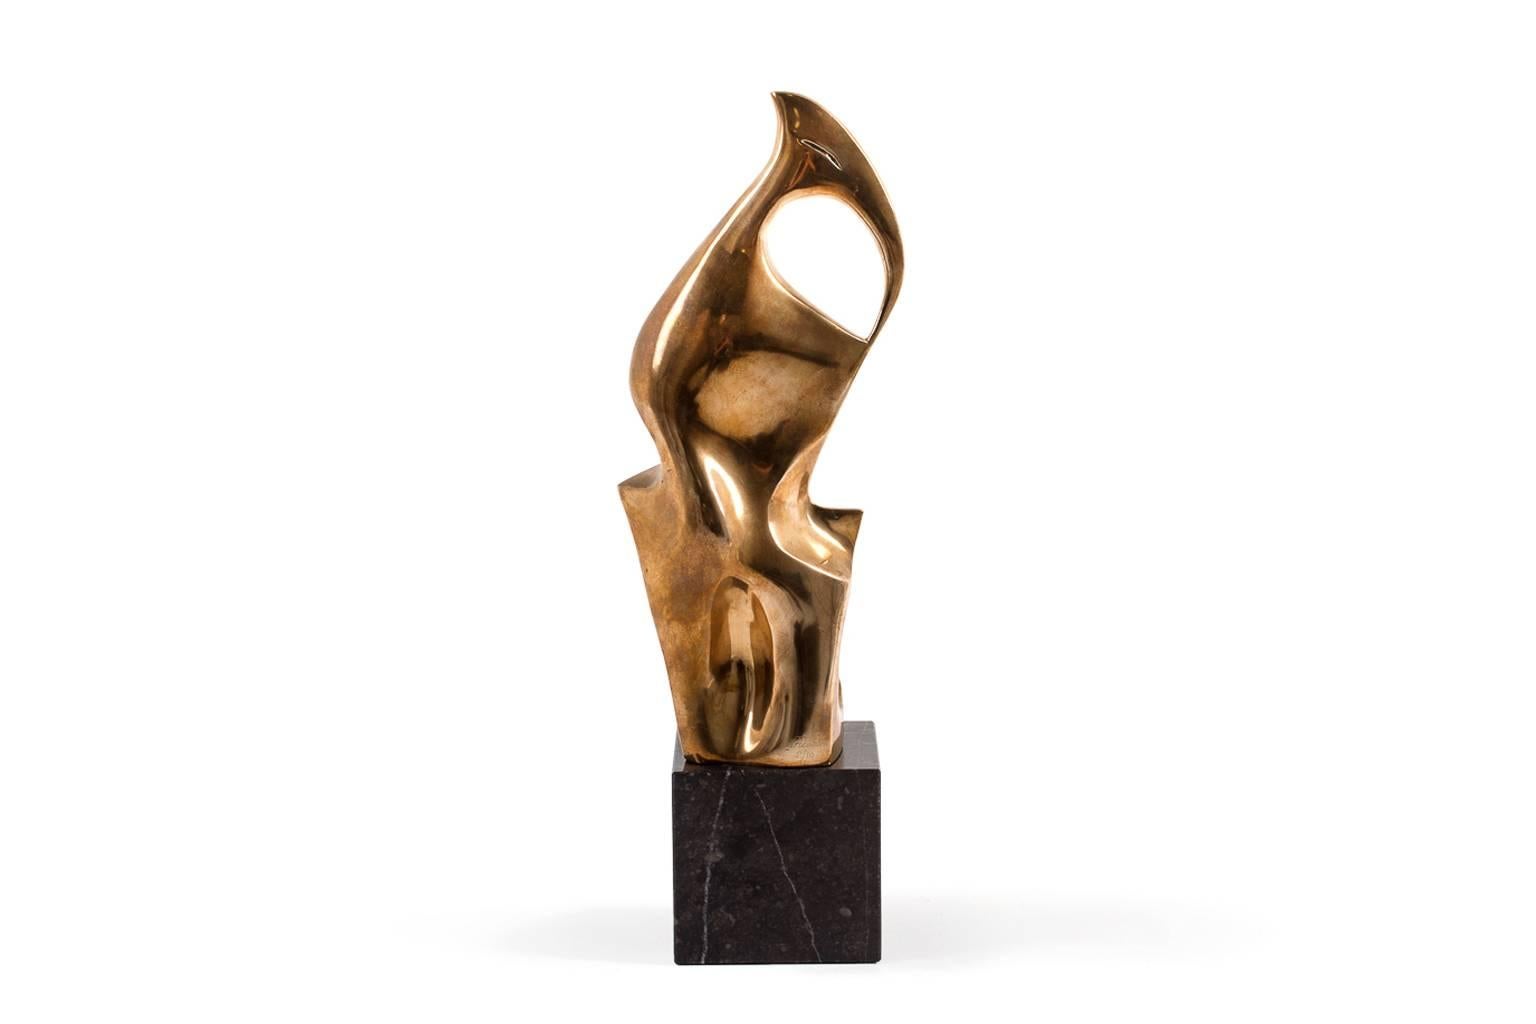 abstract bronze sculptures